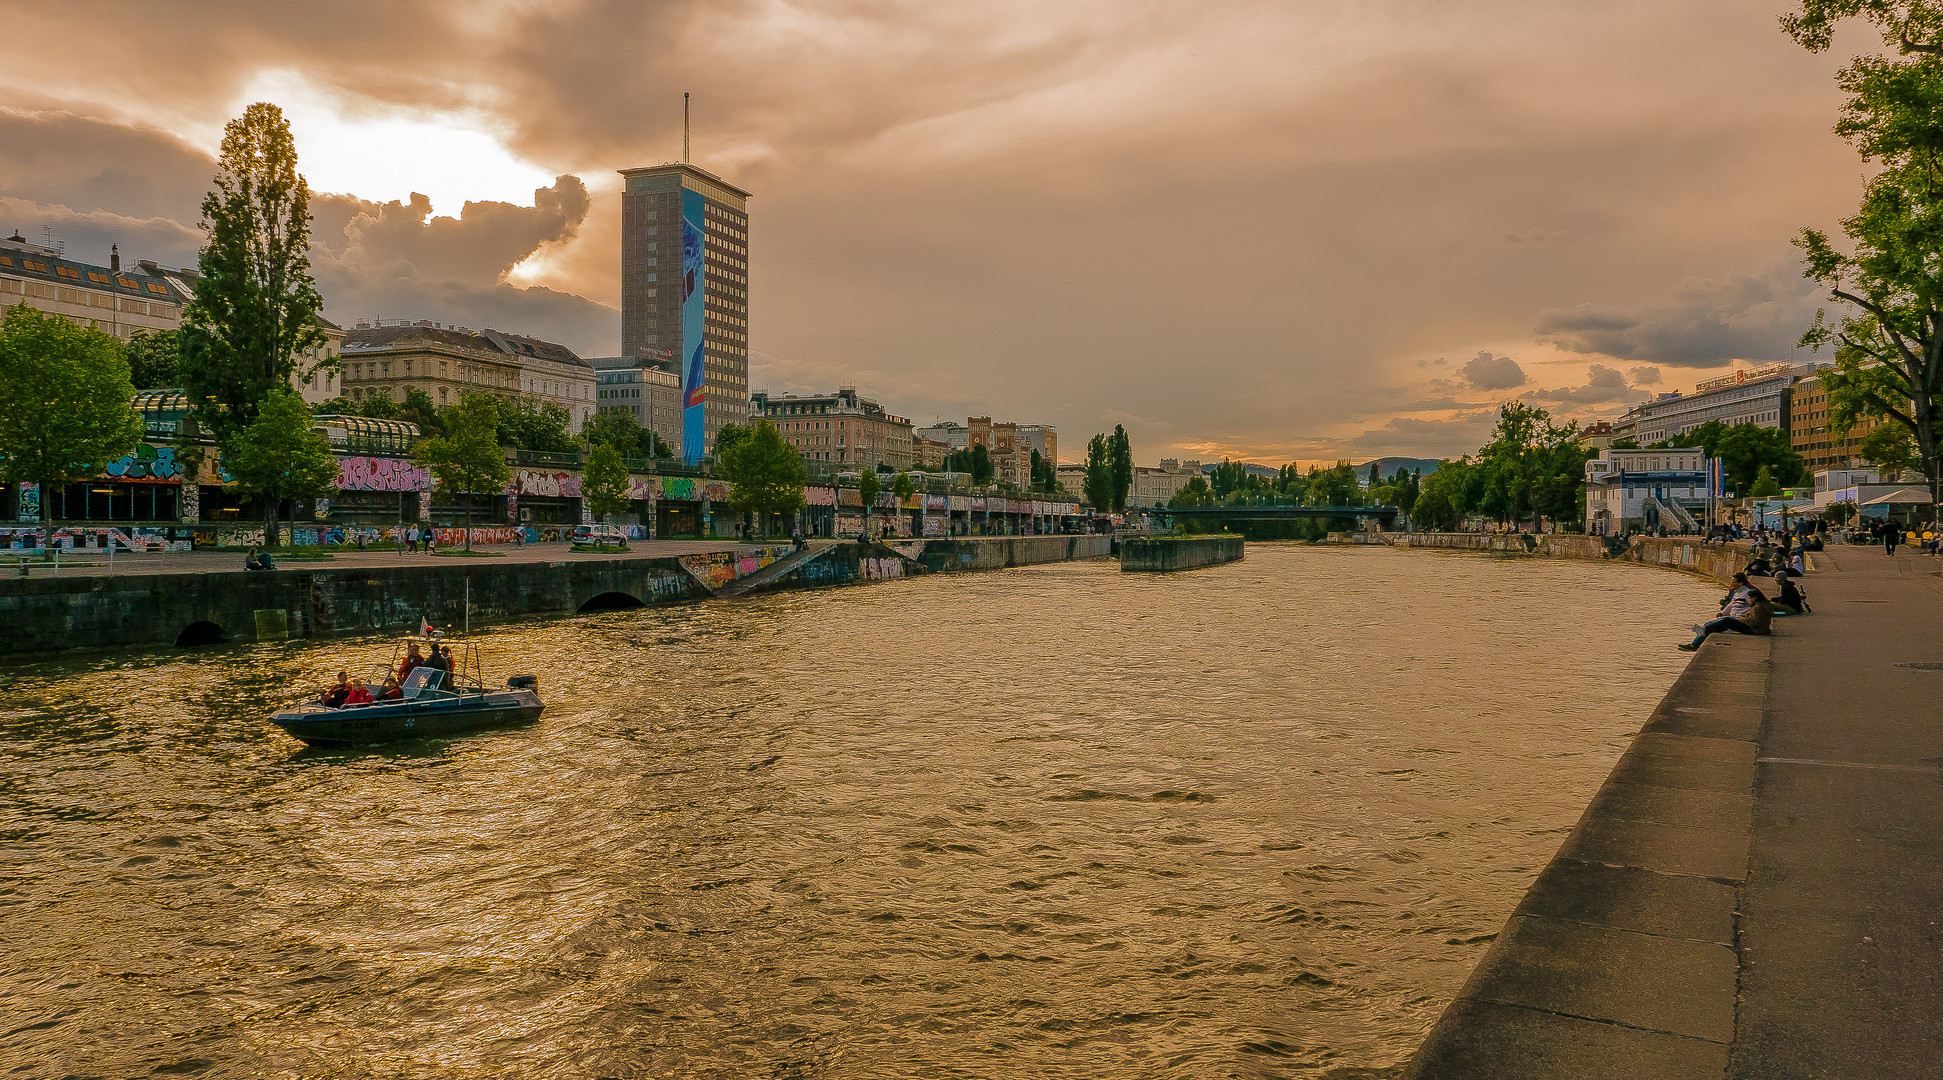 Am Donaukanal (27)